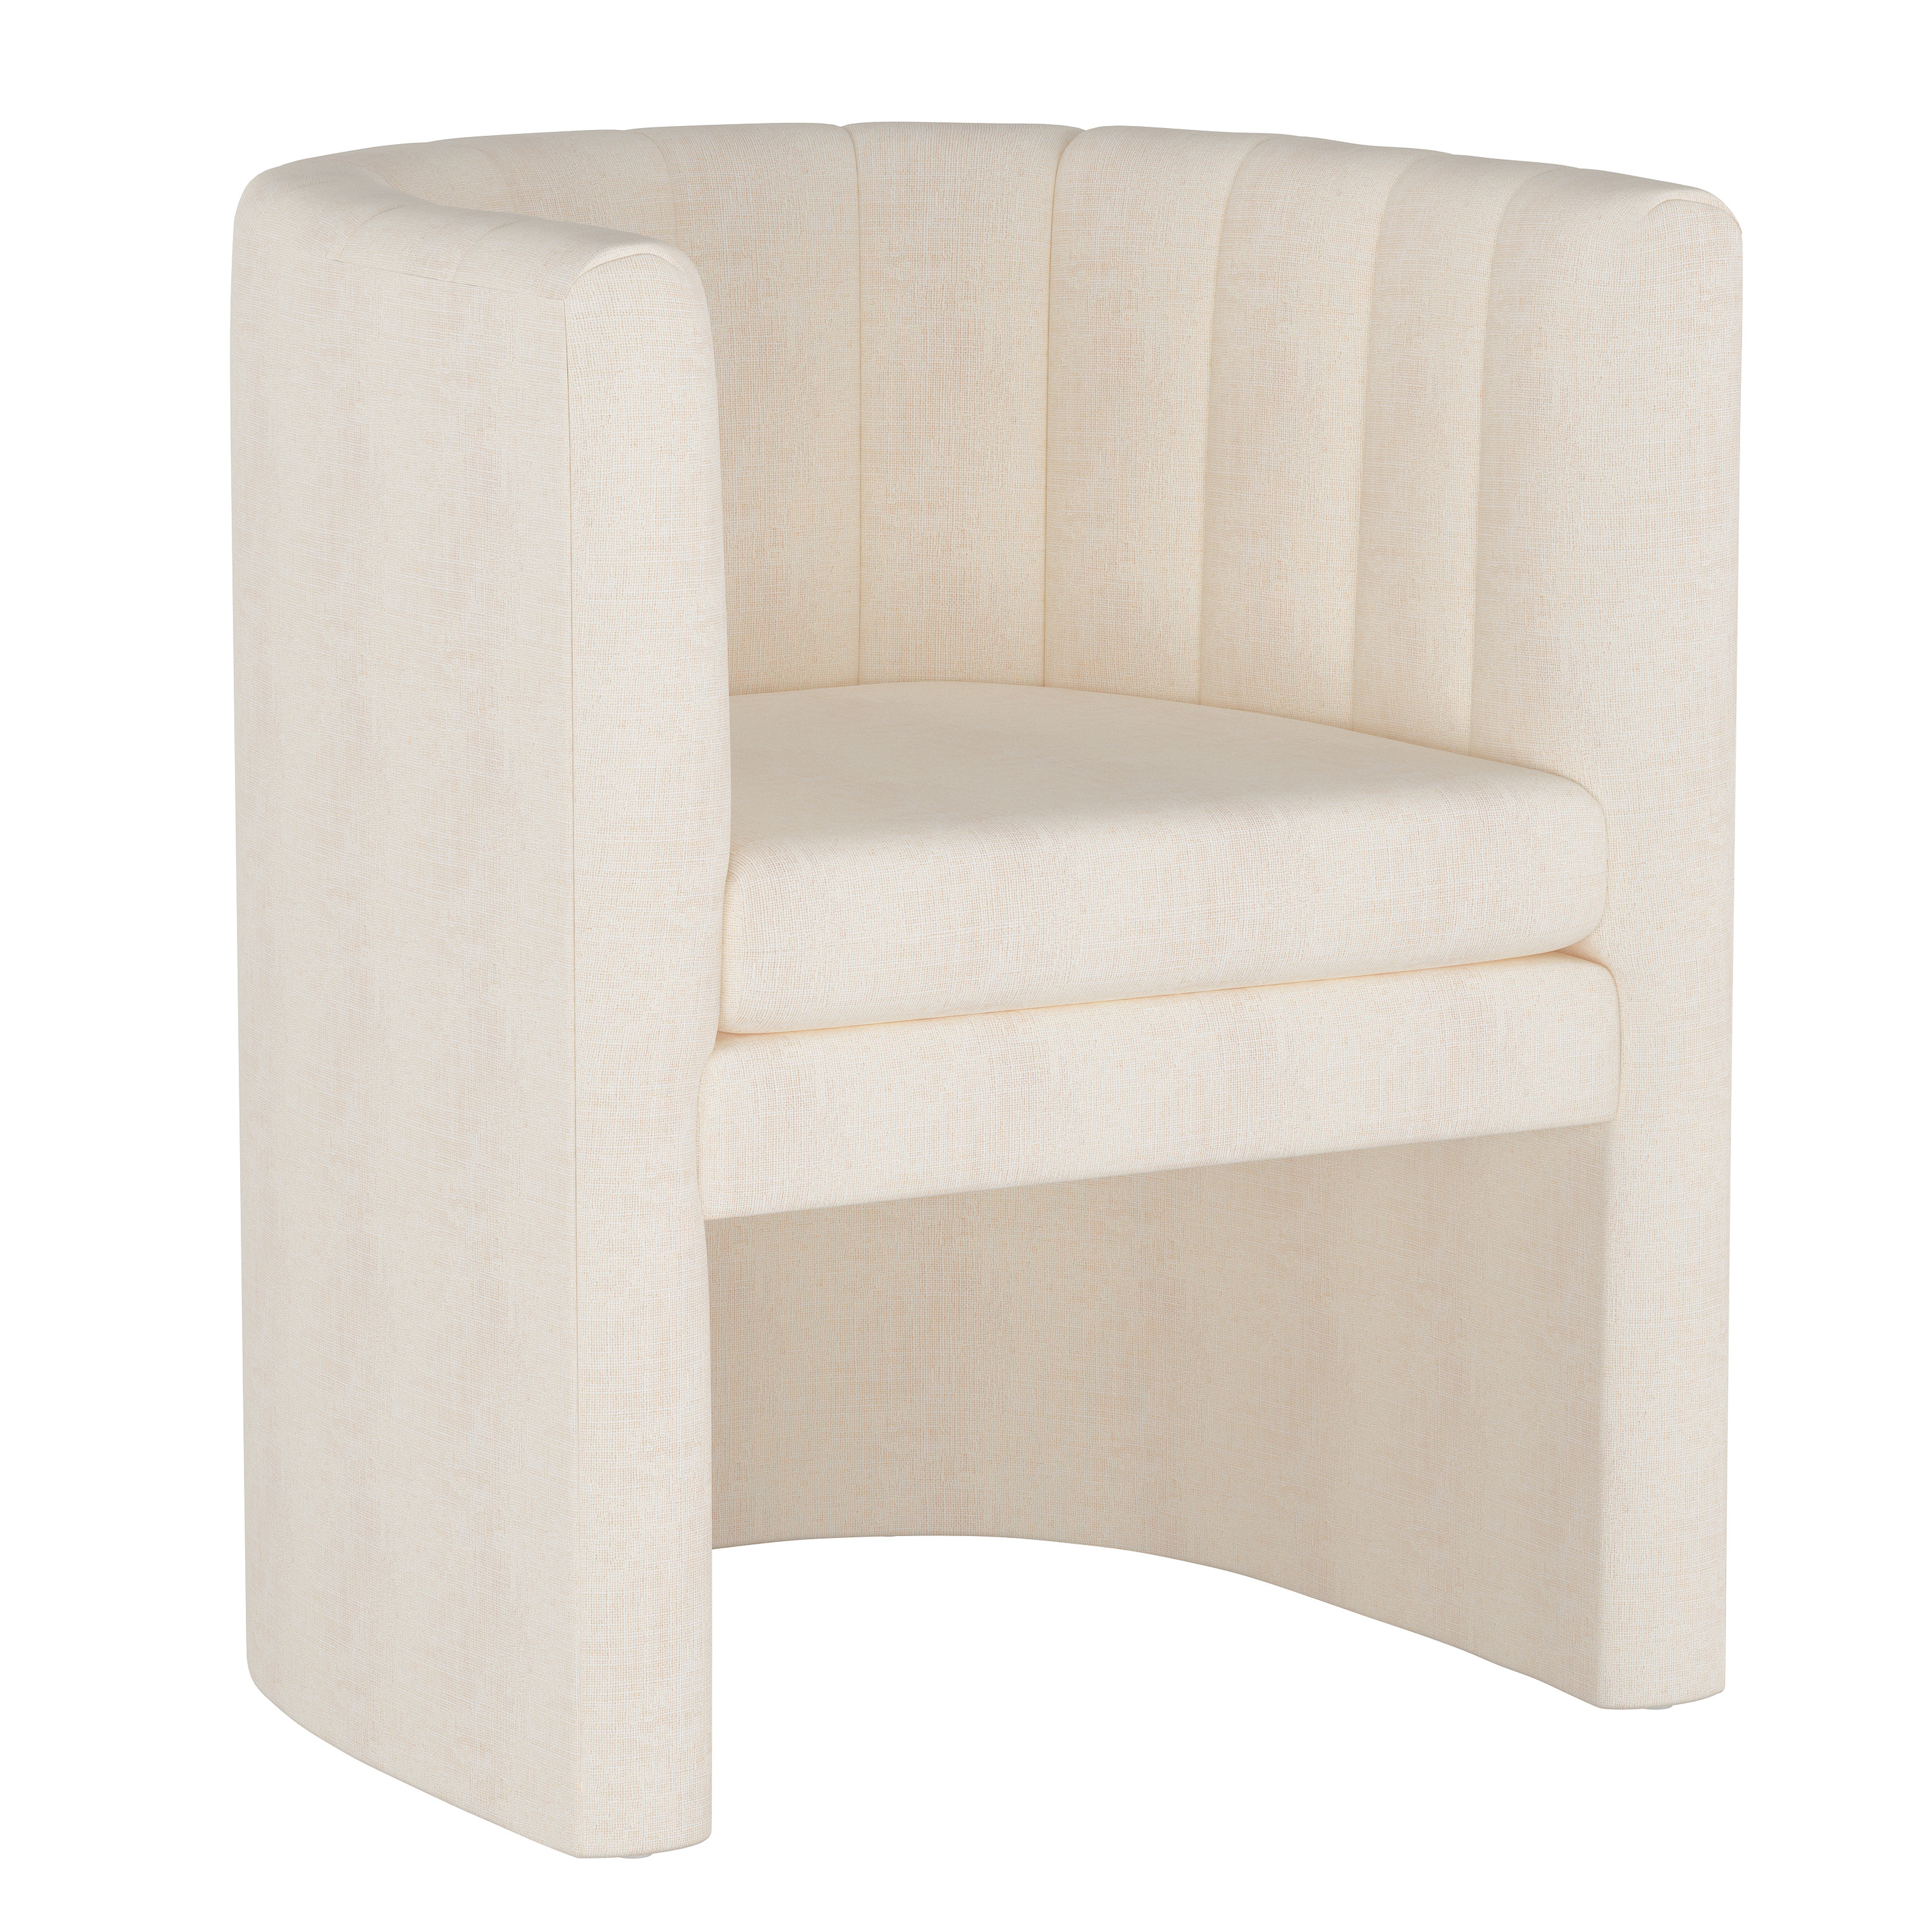 Wellshire Chair, White Linen - Studio Marcette